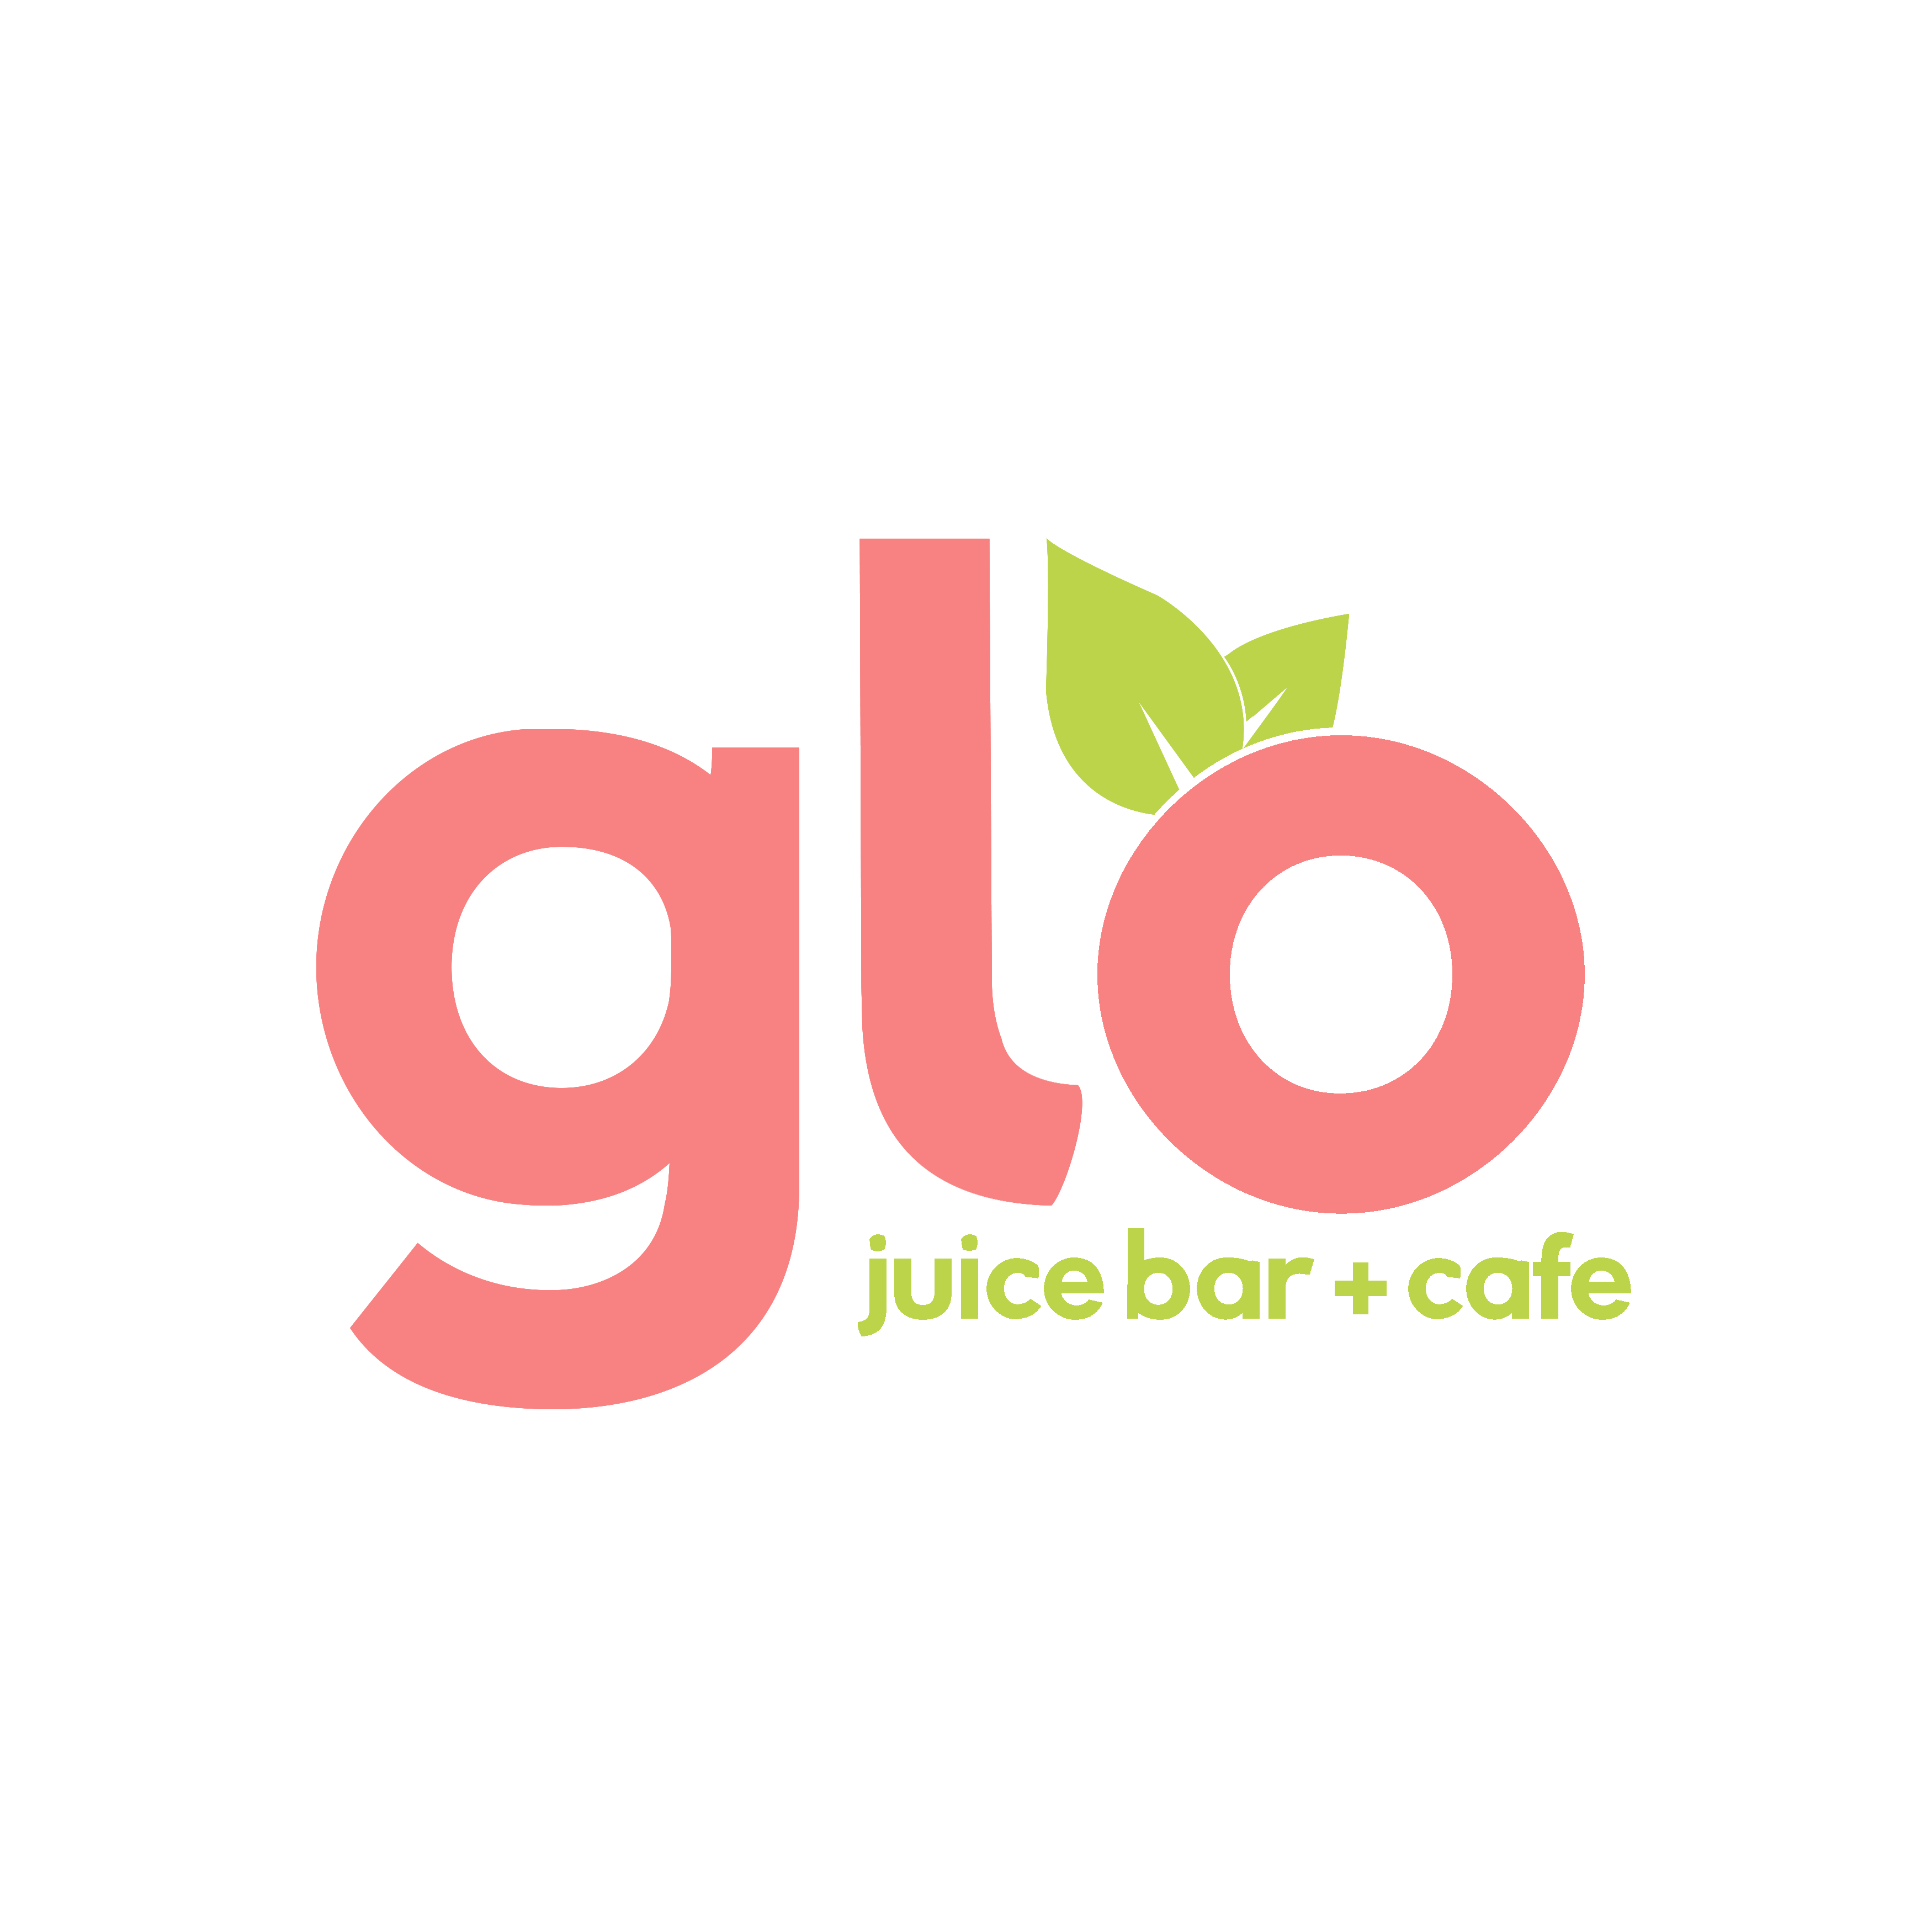 Glo Juice Bar & Cafe